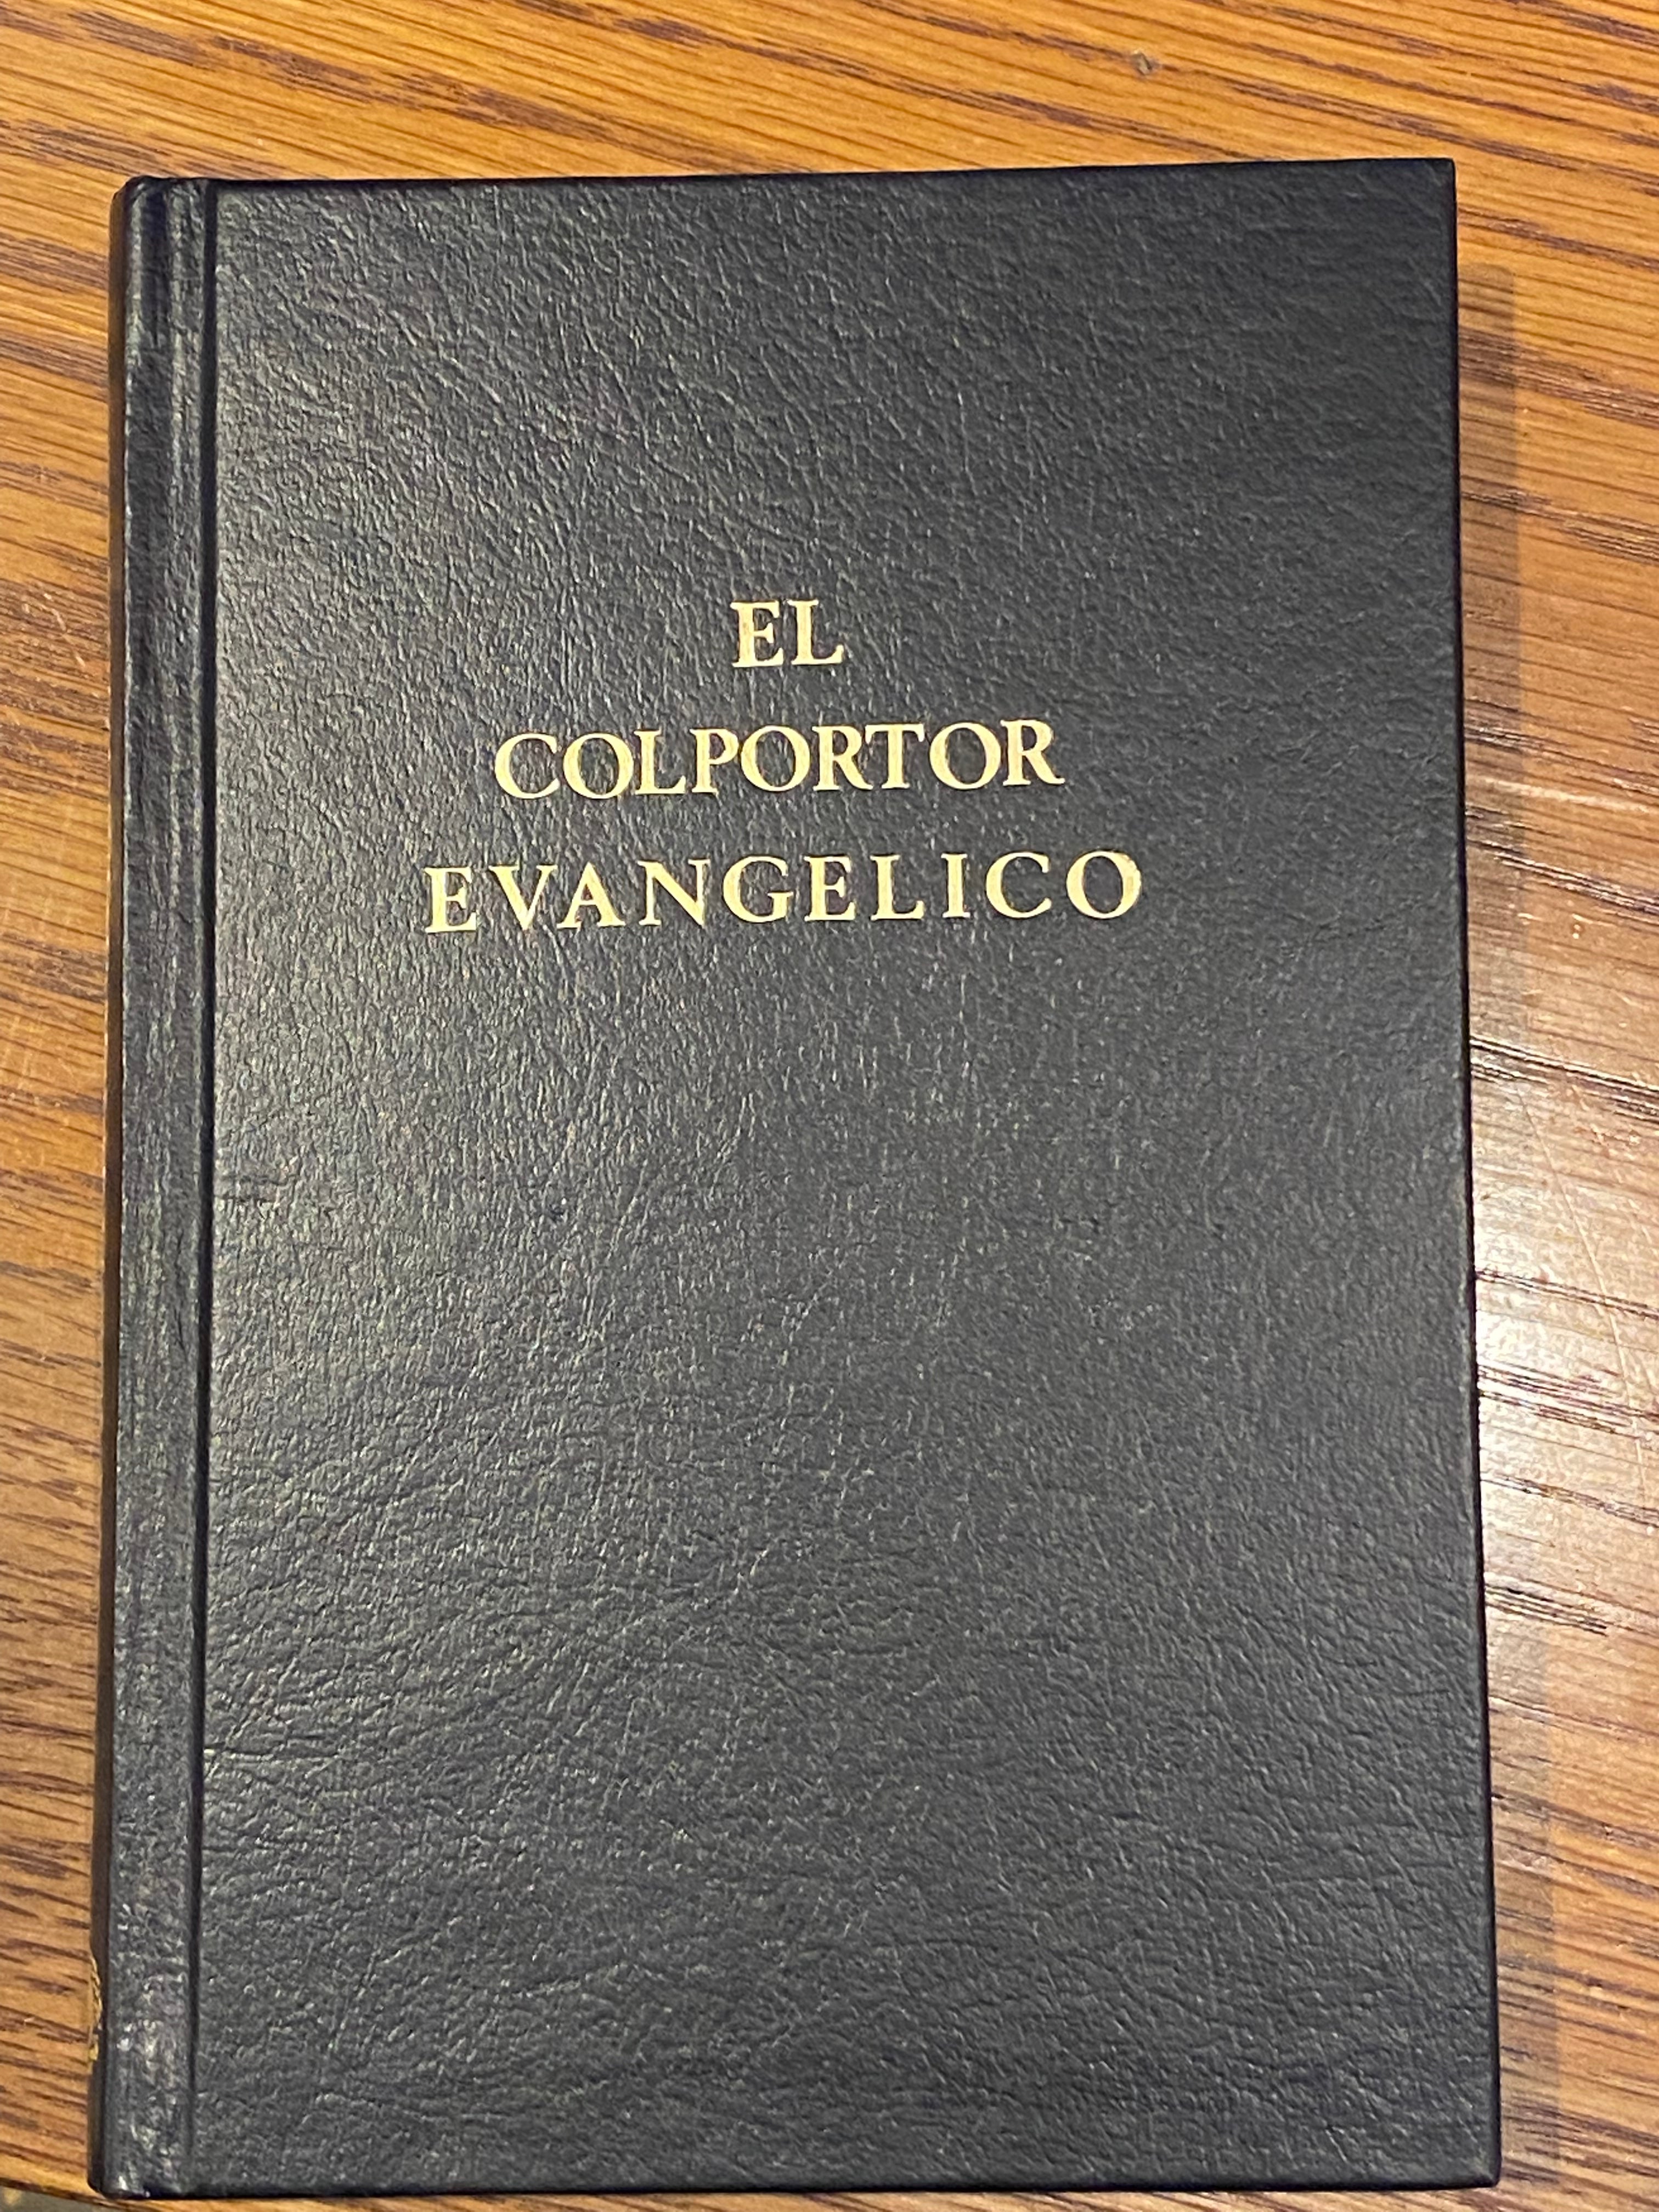 eBooks Kindle: Presencia y Configuración del Cristianismo  Protestante y Evangélico en la República Dominicana (Spanish Edition), Olea  C., Héctor B.